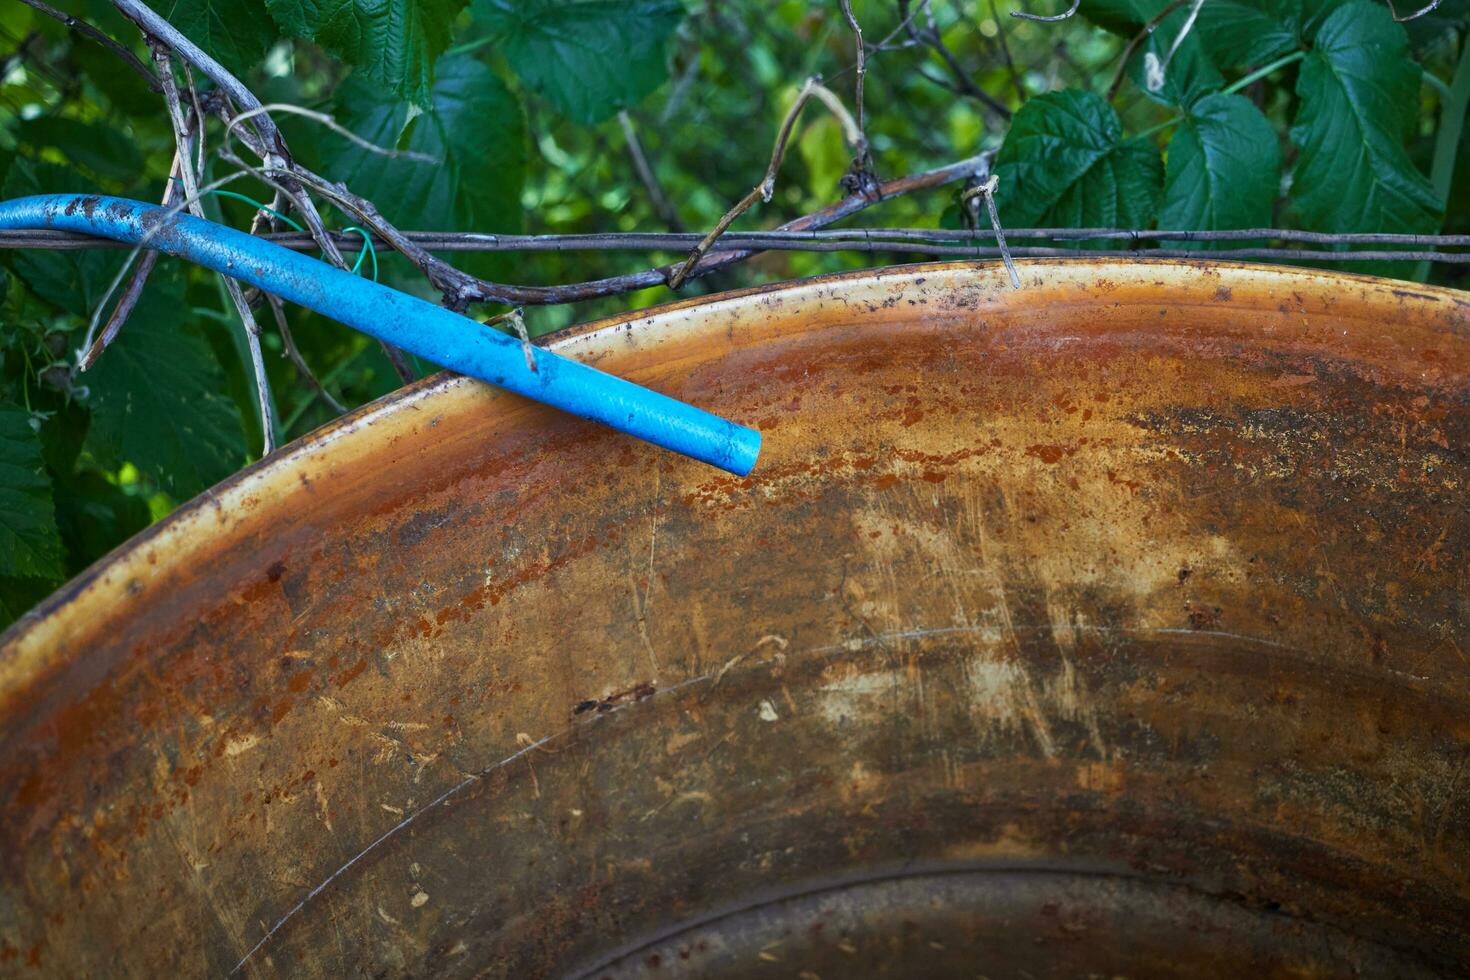 bleu irrigation tuyau et un vieux eau de pluie baril. photo